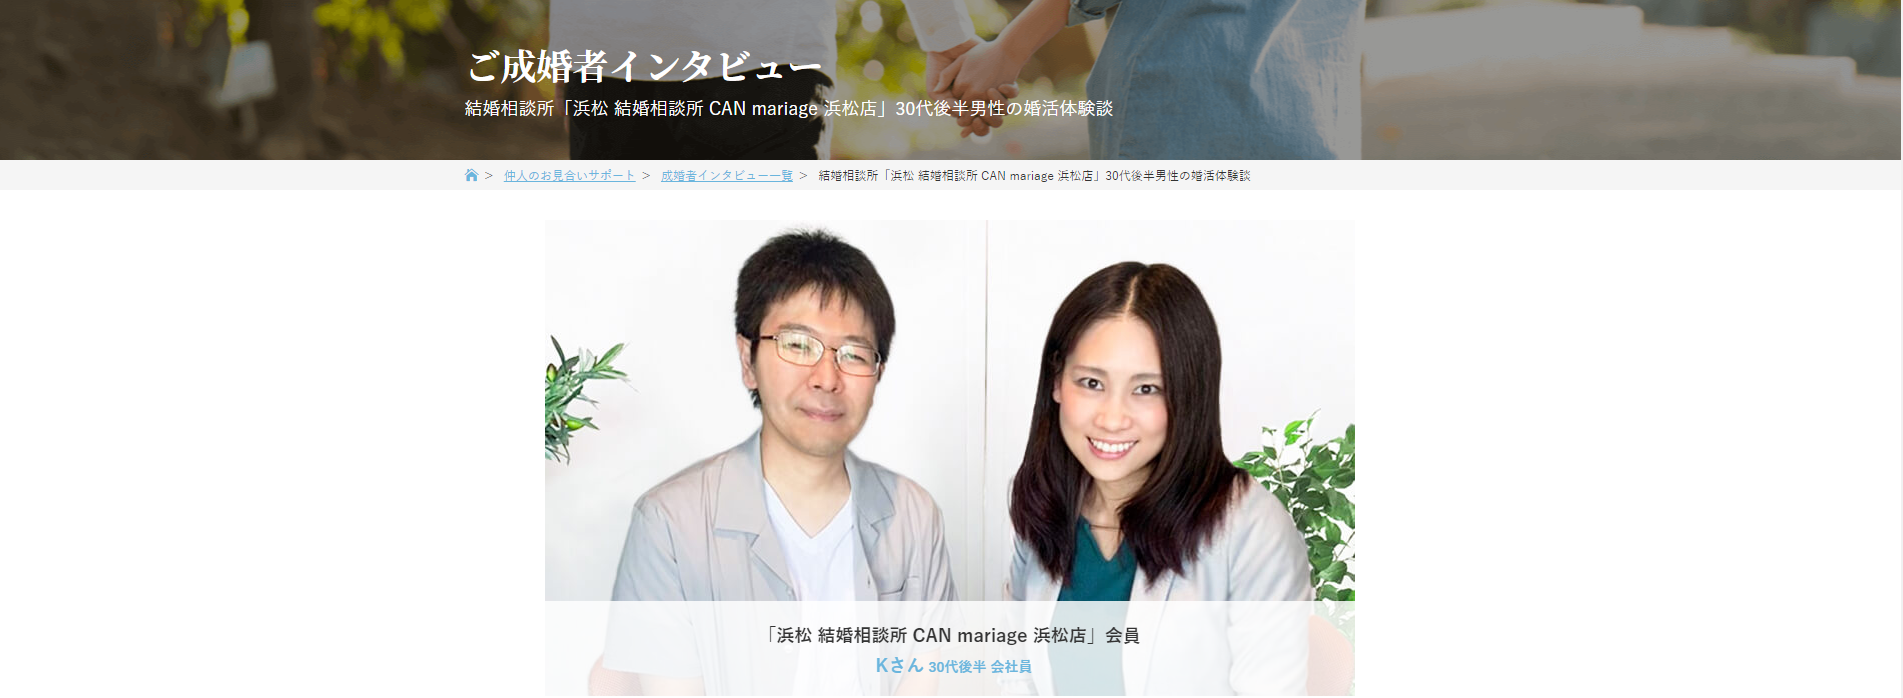 静岡浜松店 IBJ公式サイトにご成婚者インタビューが掲載されました。